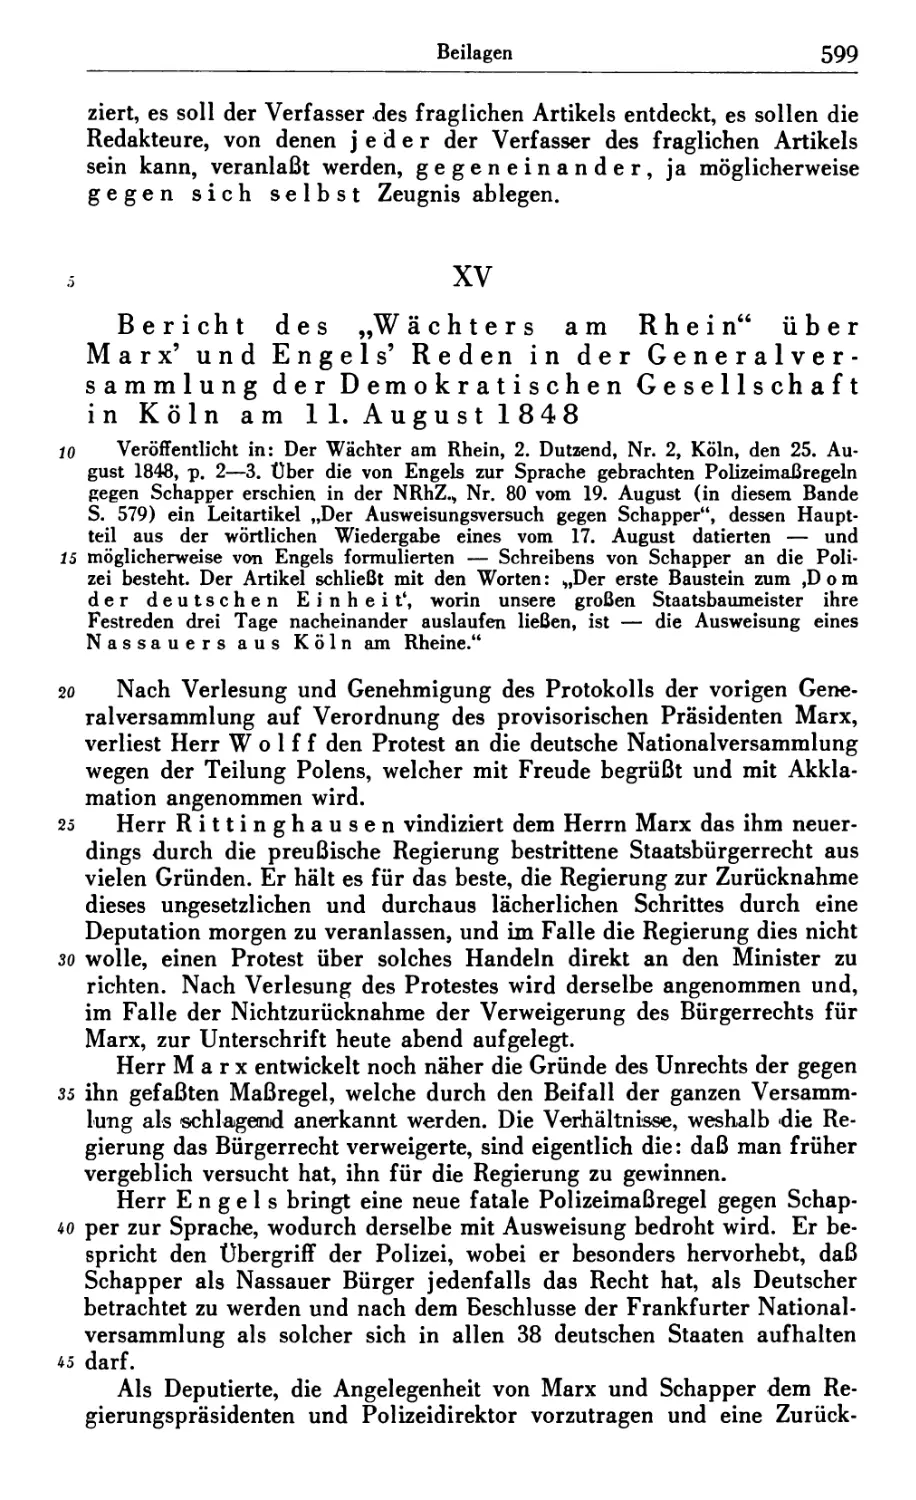 XV. Bericht des „Wächters am Rhein“ über Marx’ und Engels’ Reden in der Generalversammlung der Demokratischen Gesellschaft in Köln am 11. August 1848